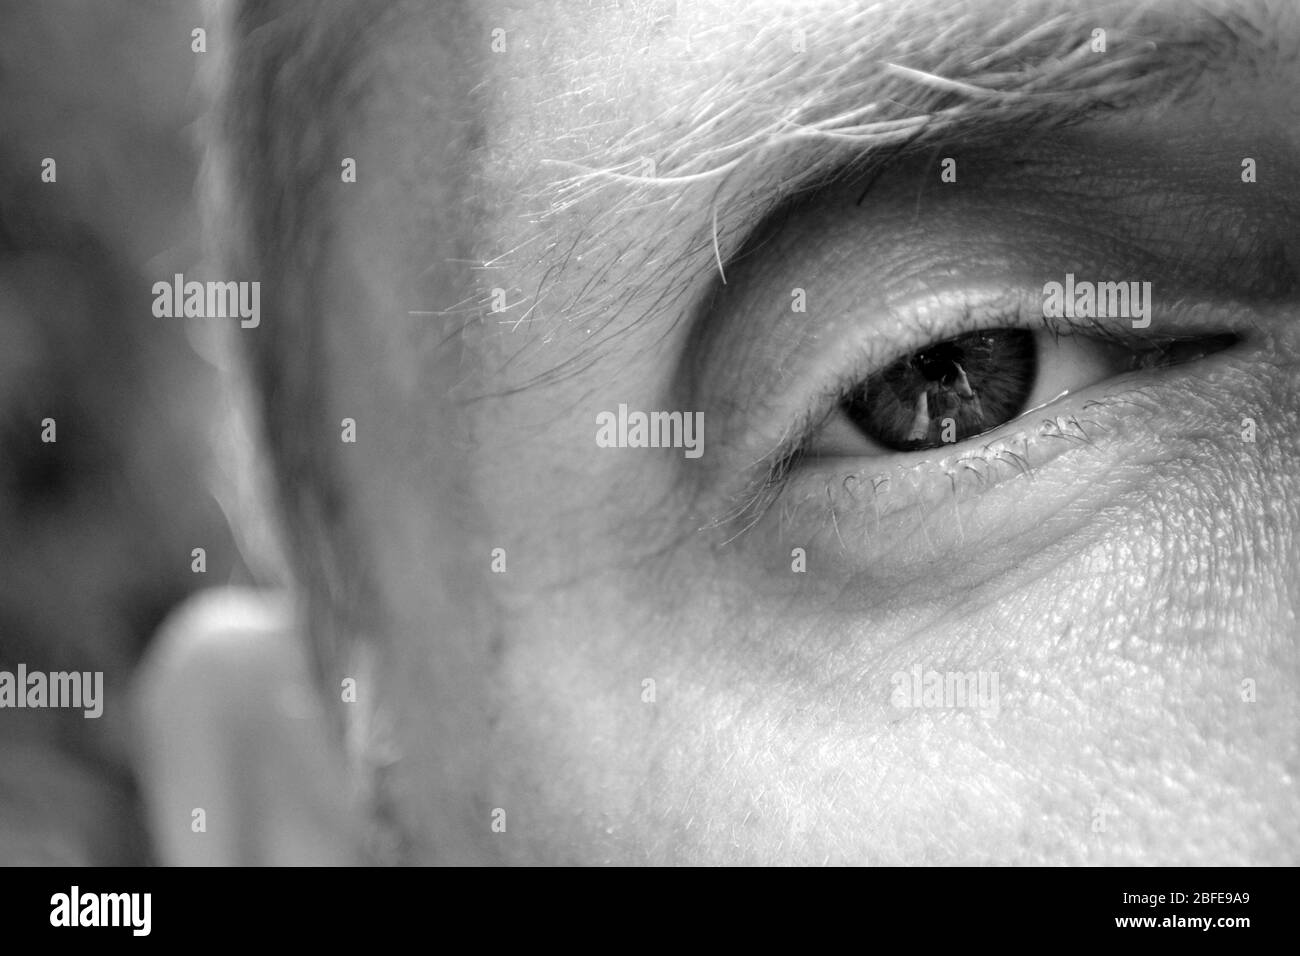 Primo piano dell'occhio e del viso dell'uomo - fotografia in bianco e nero Foto Stock